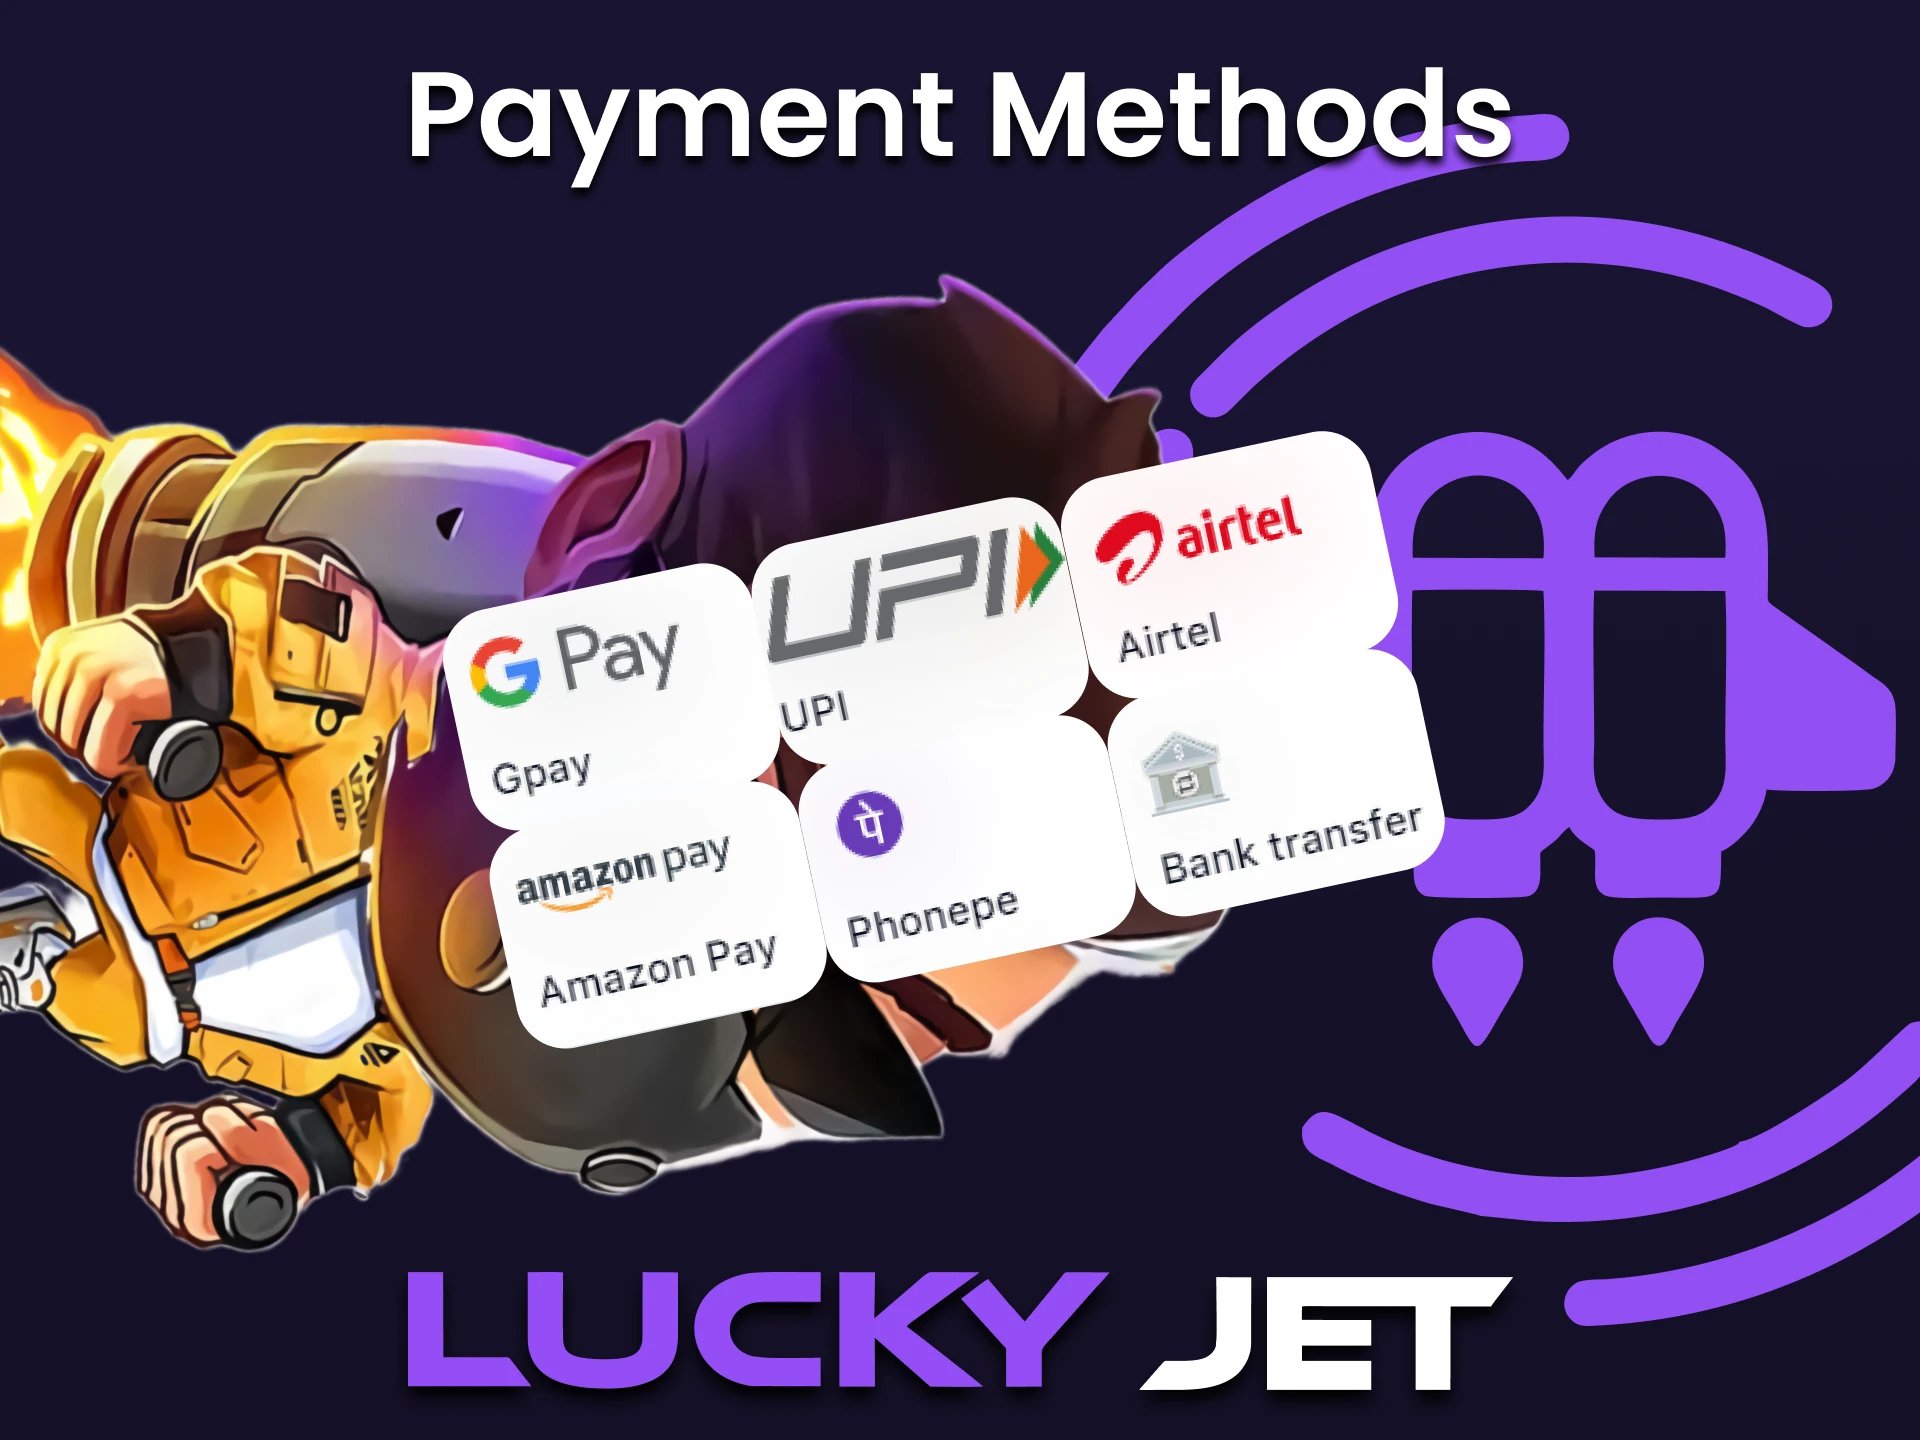 La variedad de métodos de pago ofrece a los jugadores de Lucky Jet una amplia gama de opciones a la hora de realizar depósitos y retiradas.